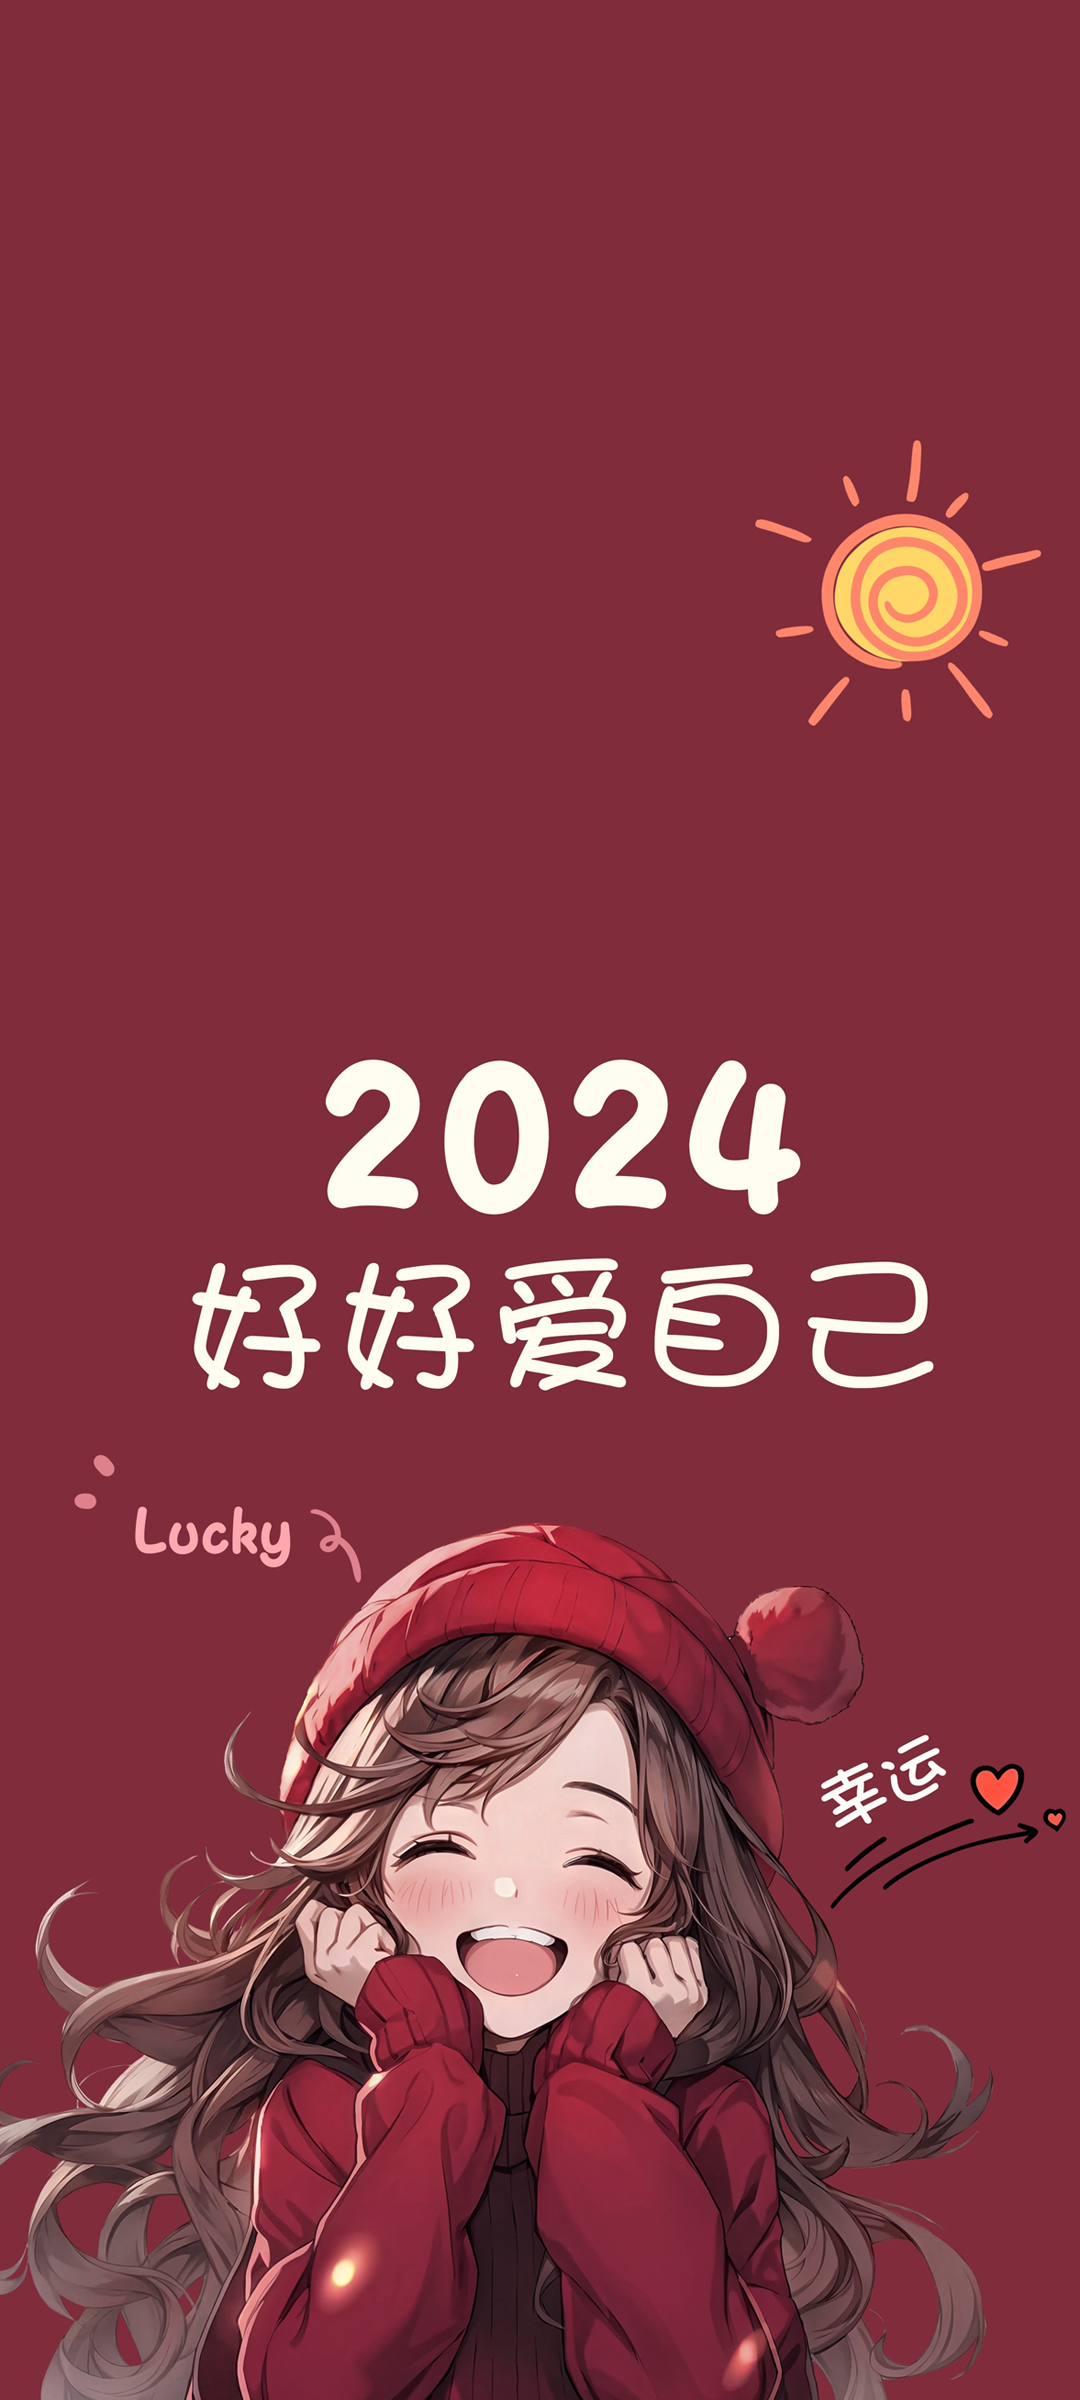 2024好好爱自己 幸运 小仙女专用高清手机壁纸图片